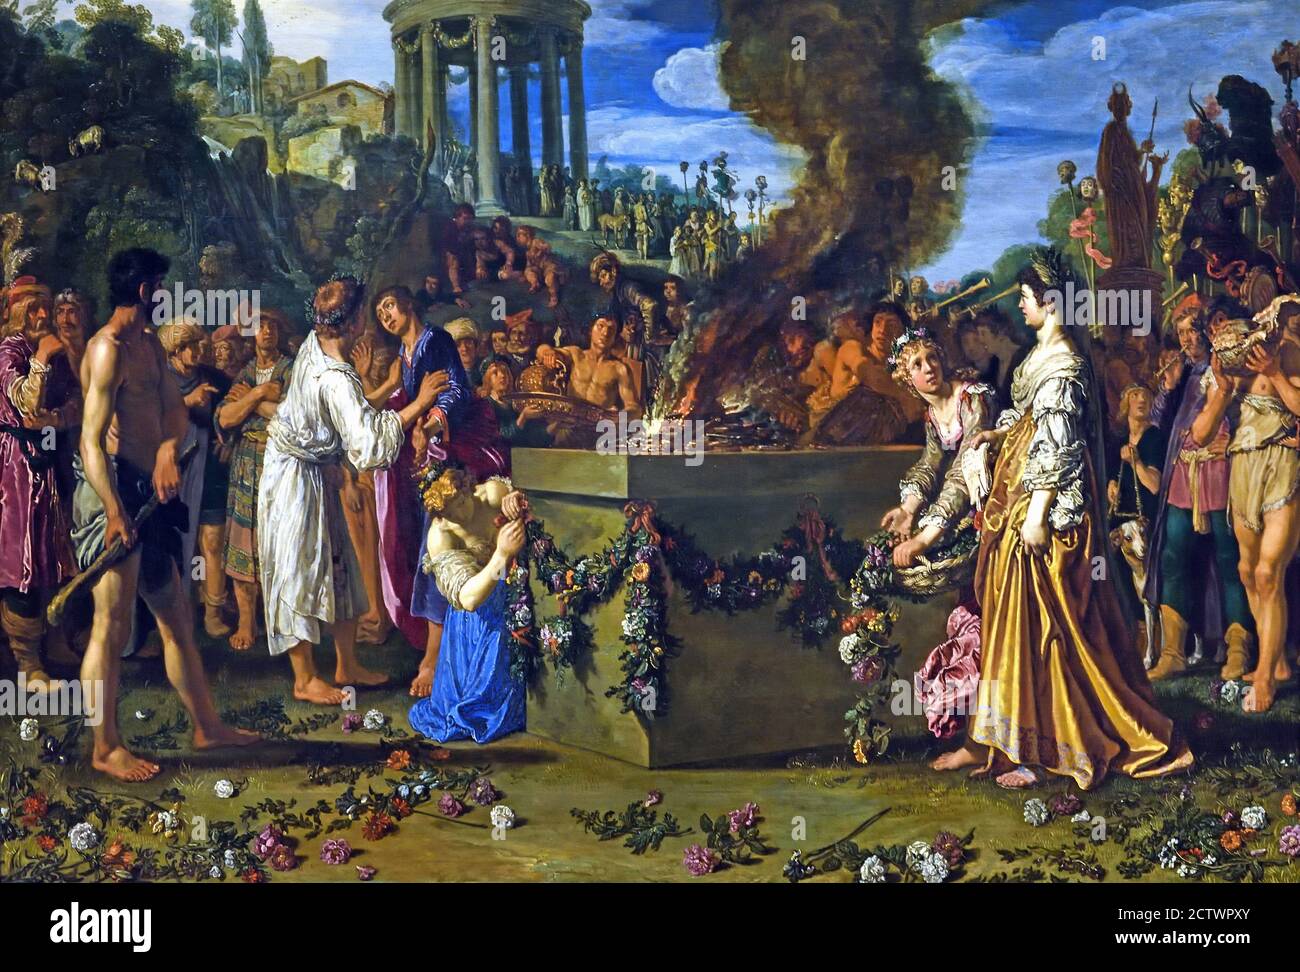 Le différend entre Orestes et Pylades 1614 Pieter Lastman 1583-1633. Pays-Bas ( Orestes et Pylades (à gauche) ont été pris pour tenter de voler la statue de Diana du temple (à gauche). L'un d'eux devra mourir. ) Banque D'Images